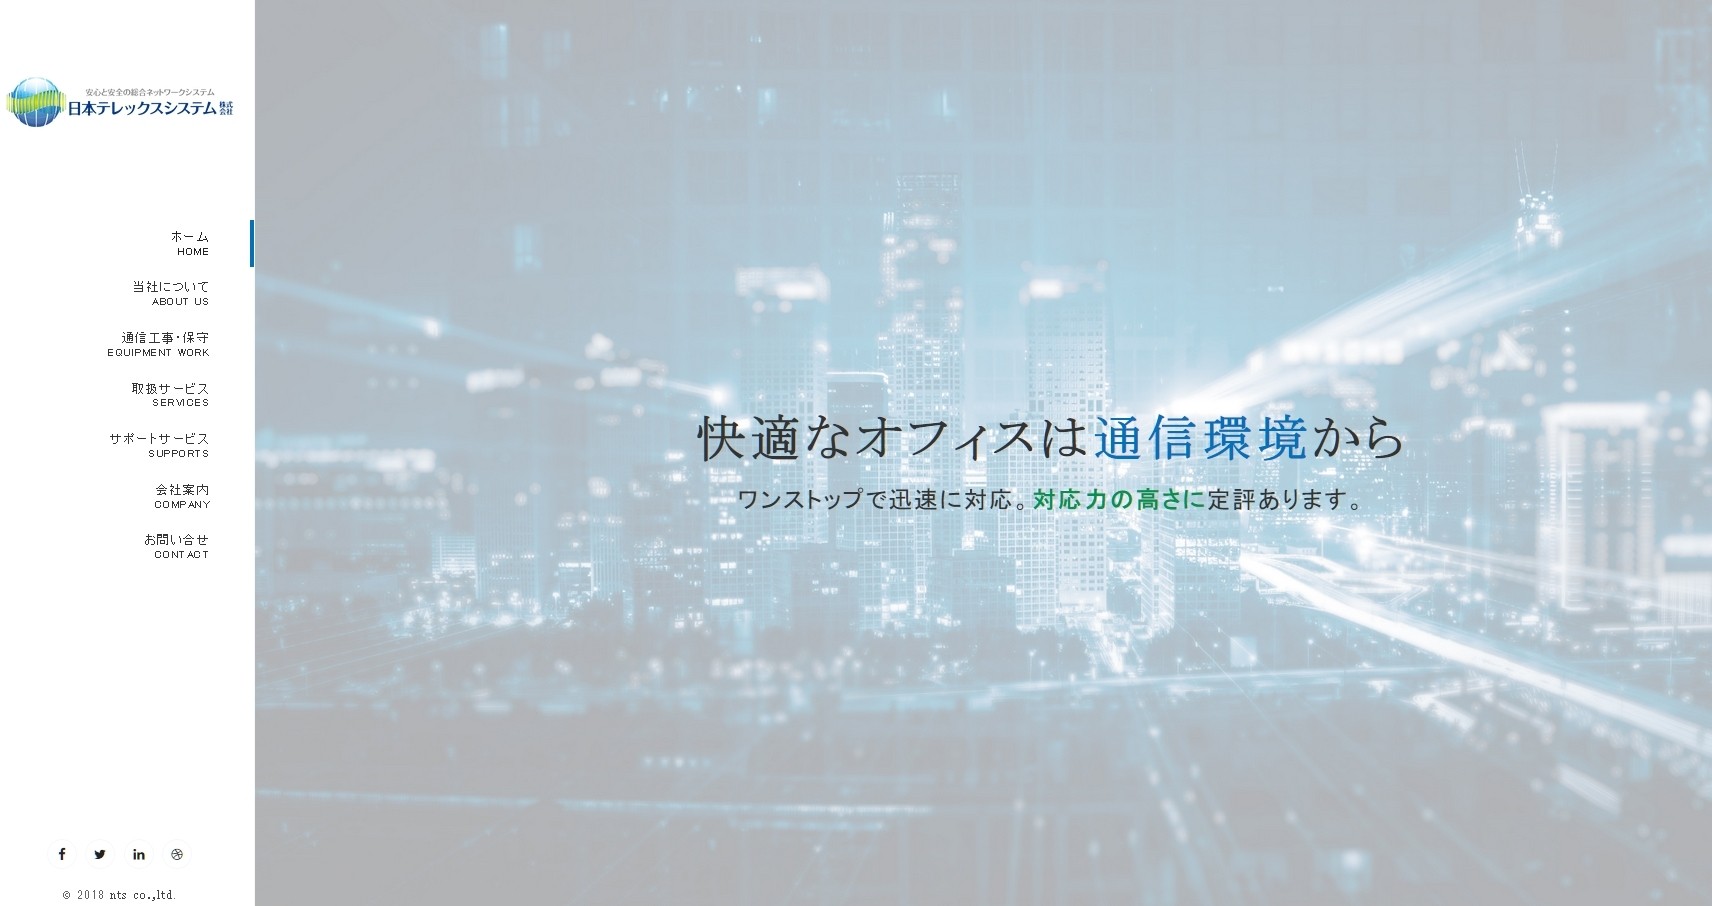 日本テレックスシステム株式会社の日本テレックスシステム株式会社サービス